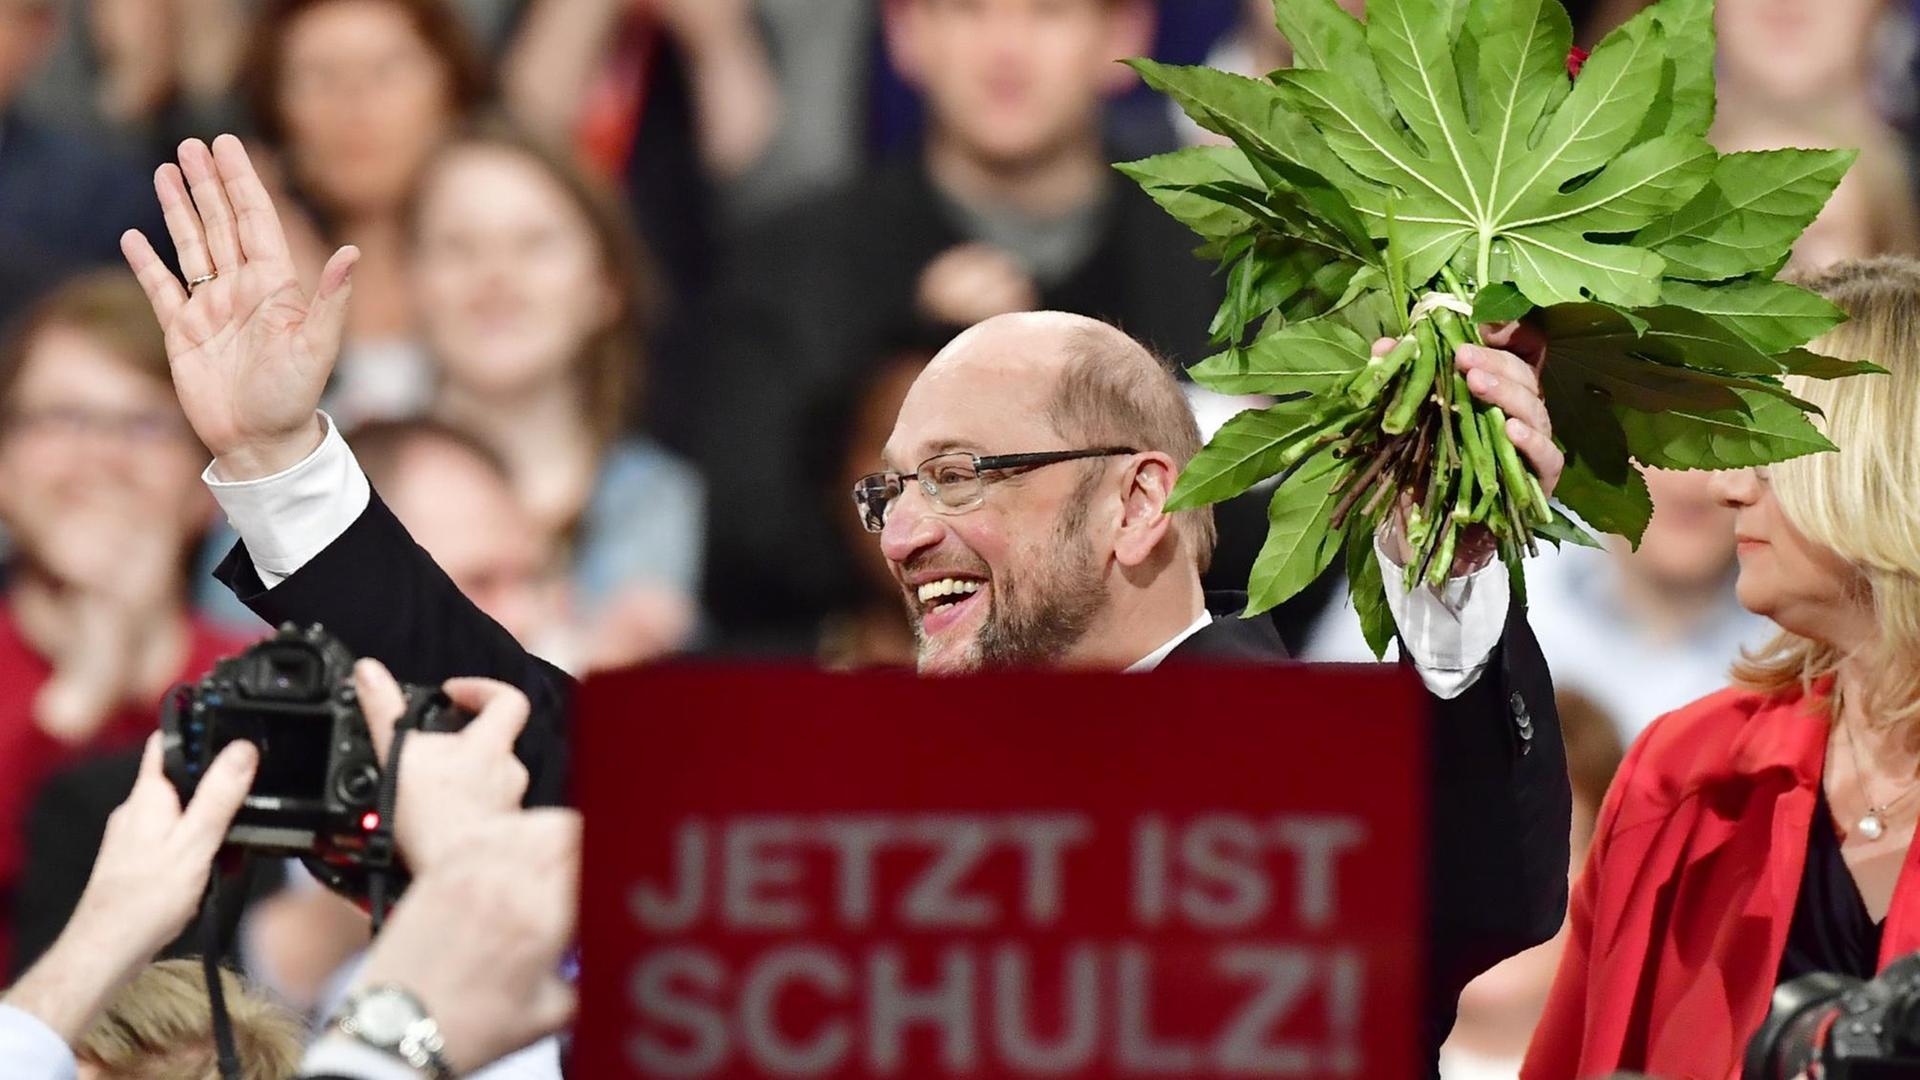 Martin Schulz auf dem SPD-Parteitag am 19. März 2017 in Berlin.